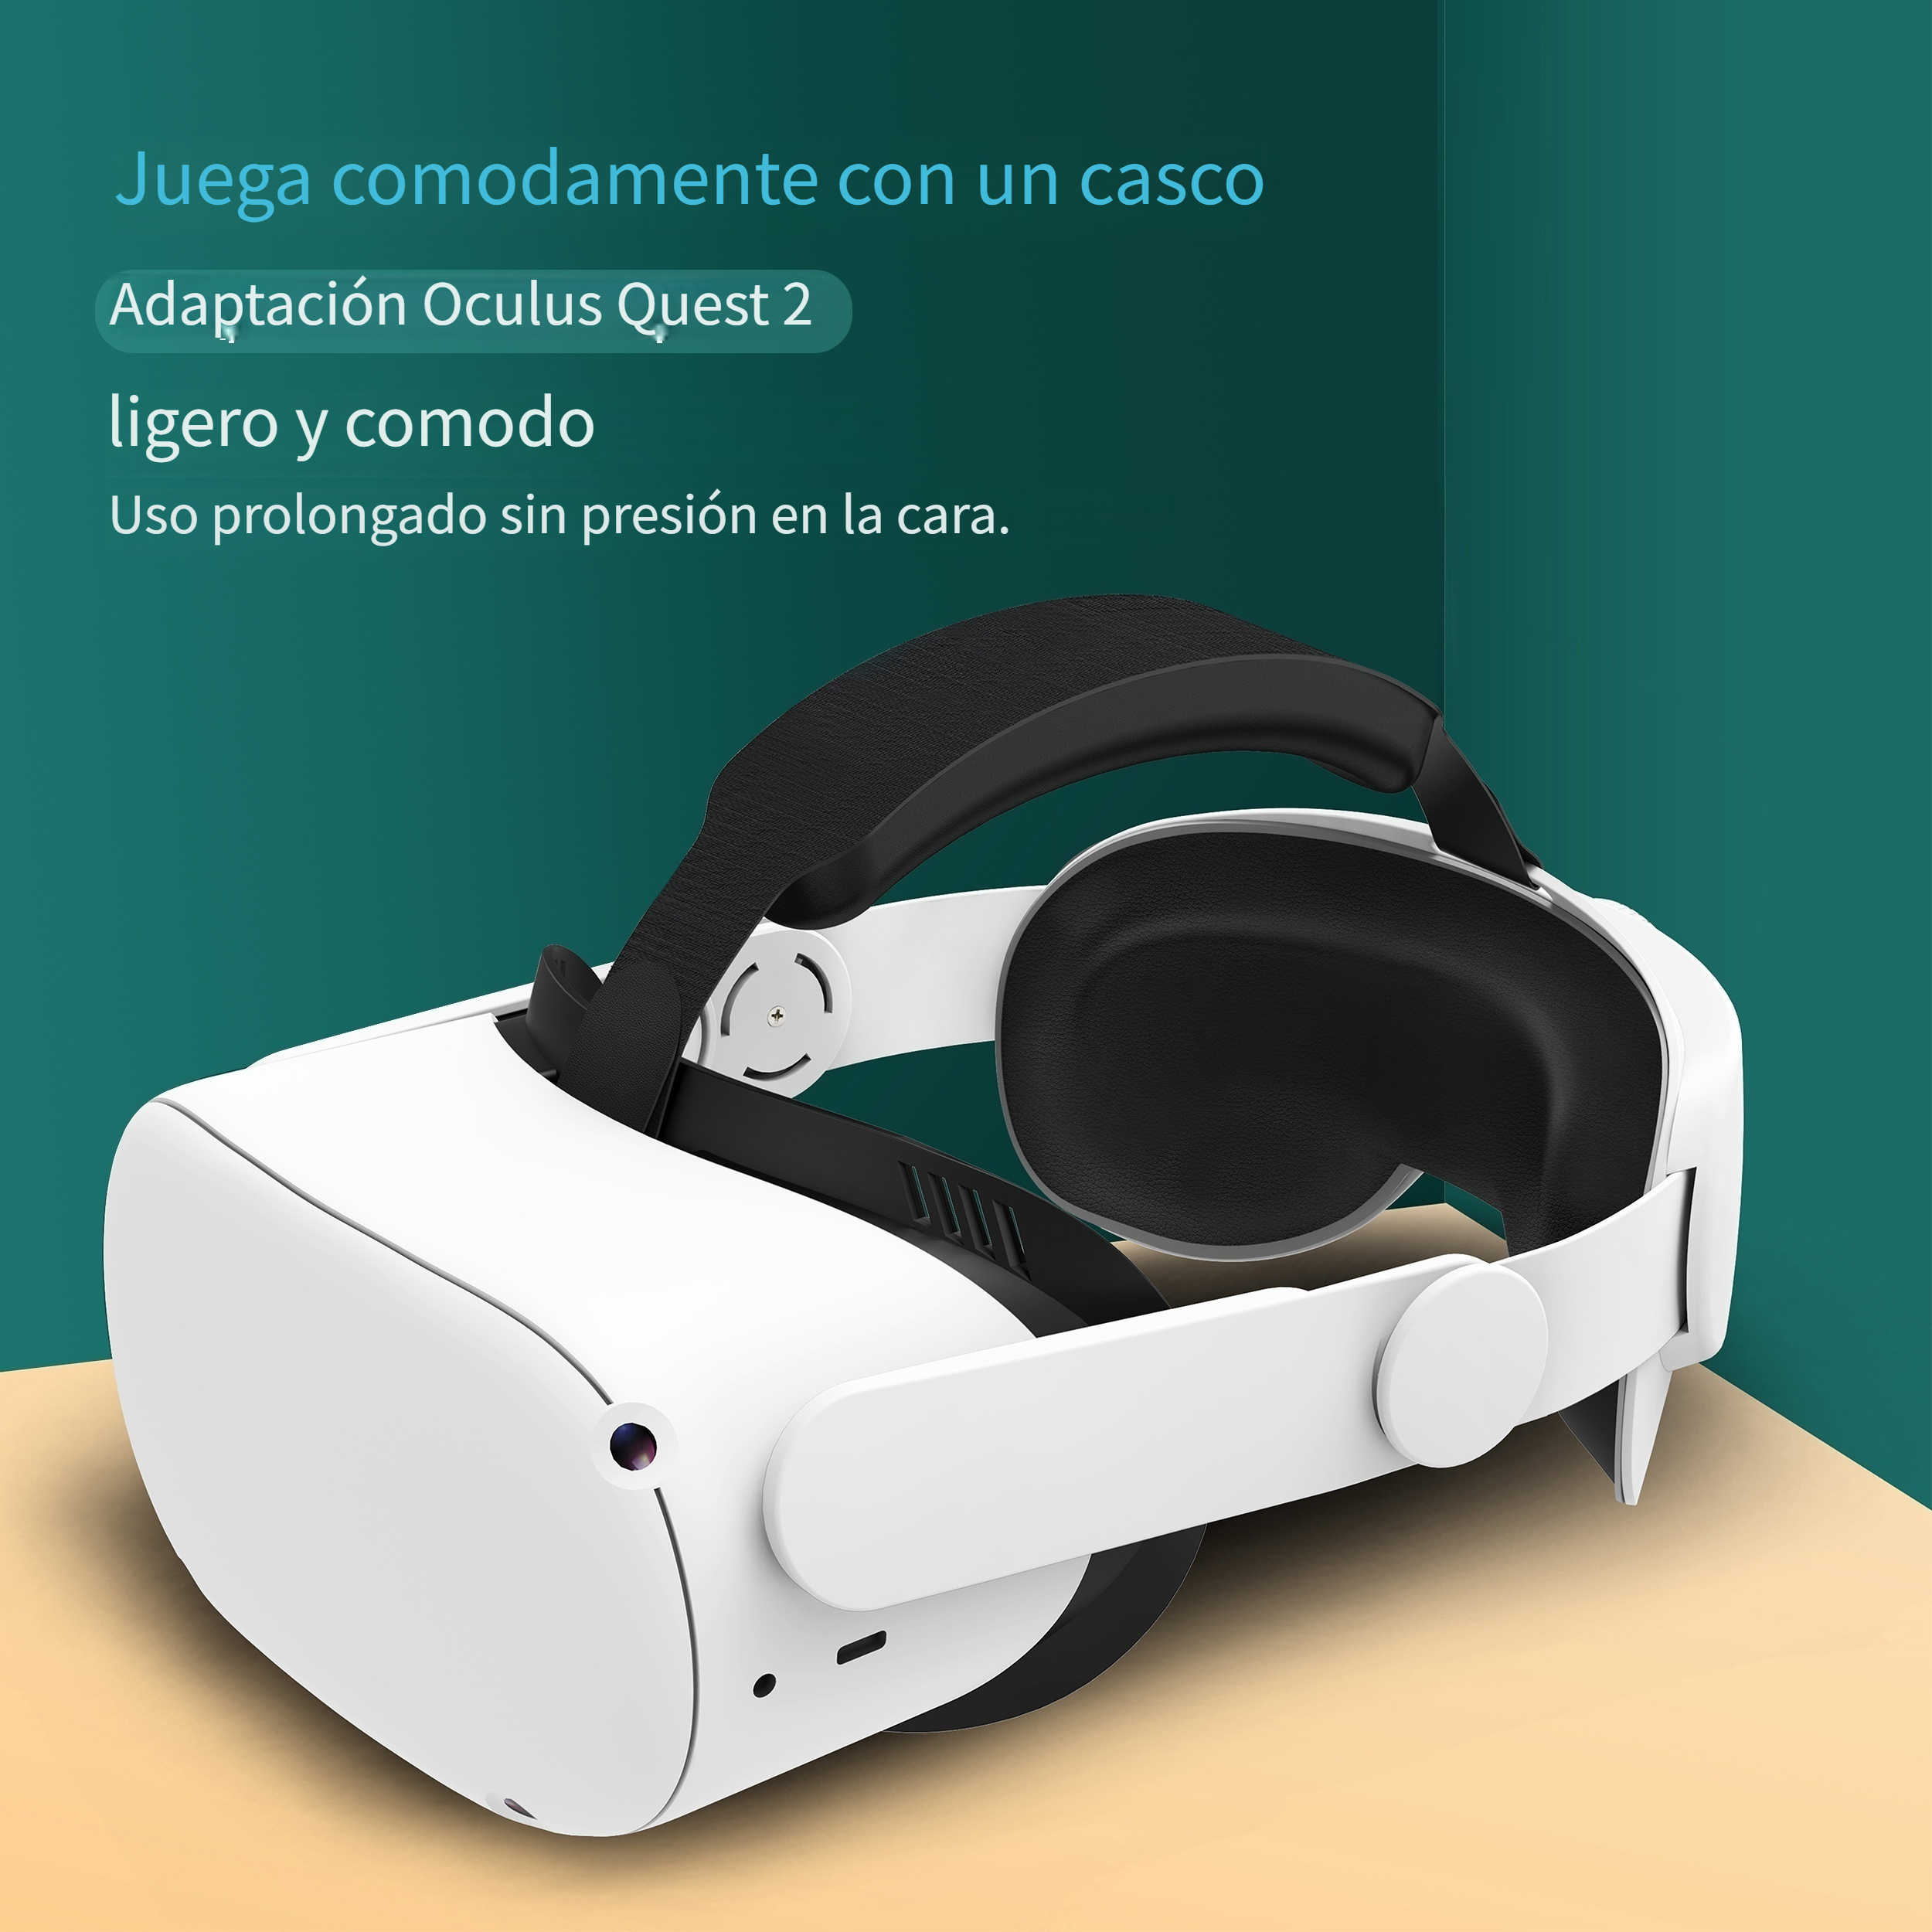 Correa para la cabeza ajustable para Meta Quest 3, accesorios para VR,  mejora la diadema Elite